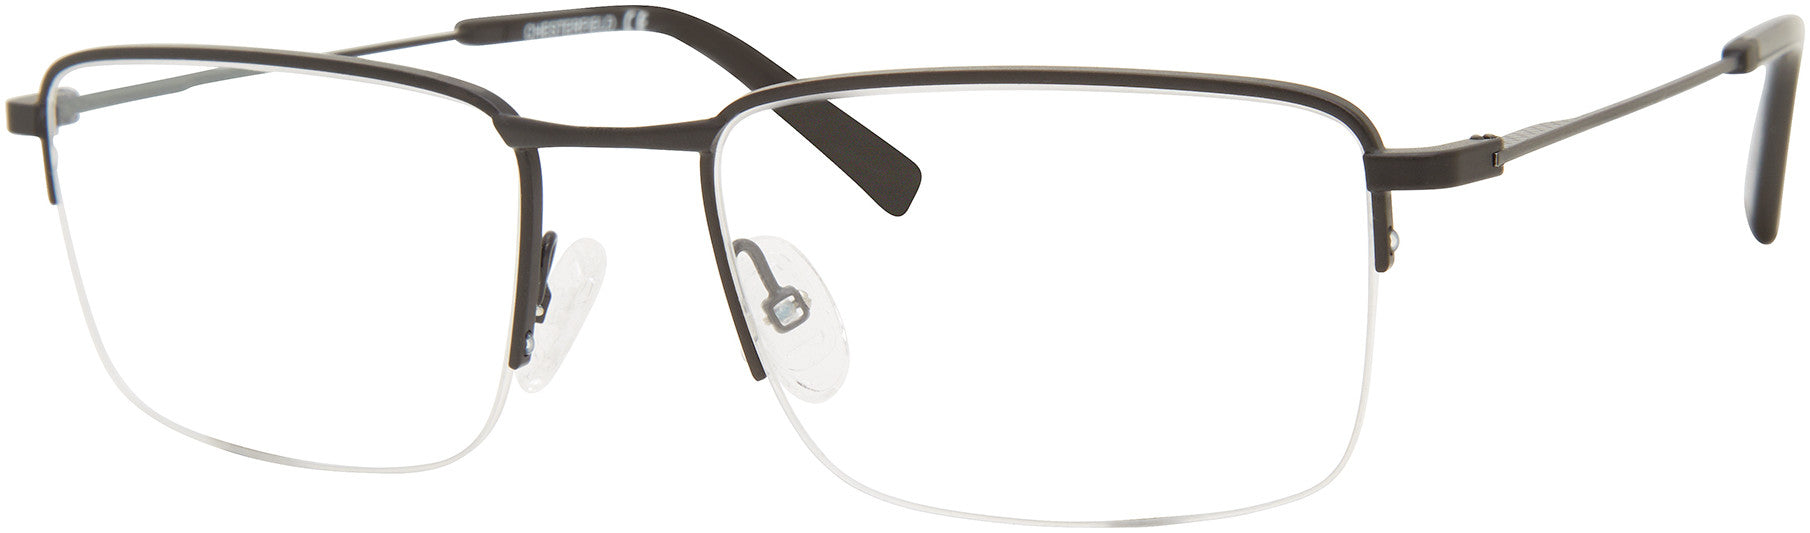  Chesterfield 81XL Rectangular Eyeglasses 0003-0003  Matte Black (00 Demo Lens)